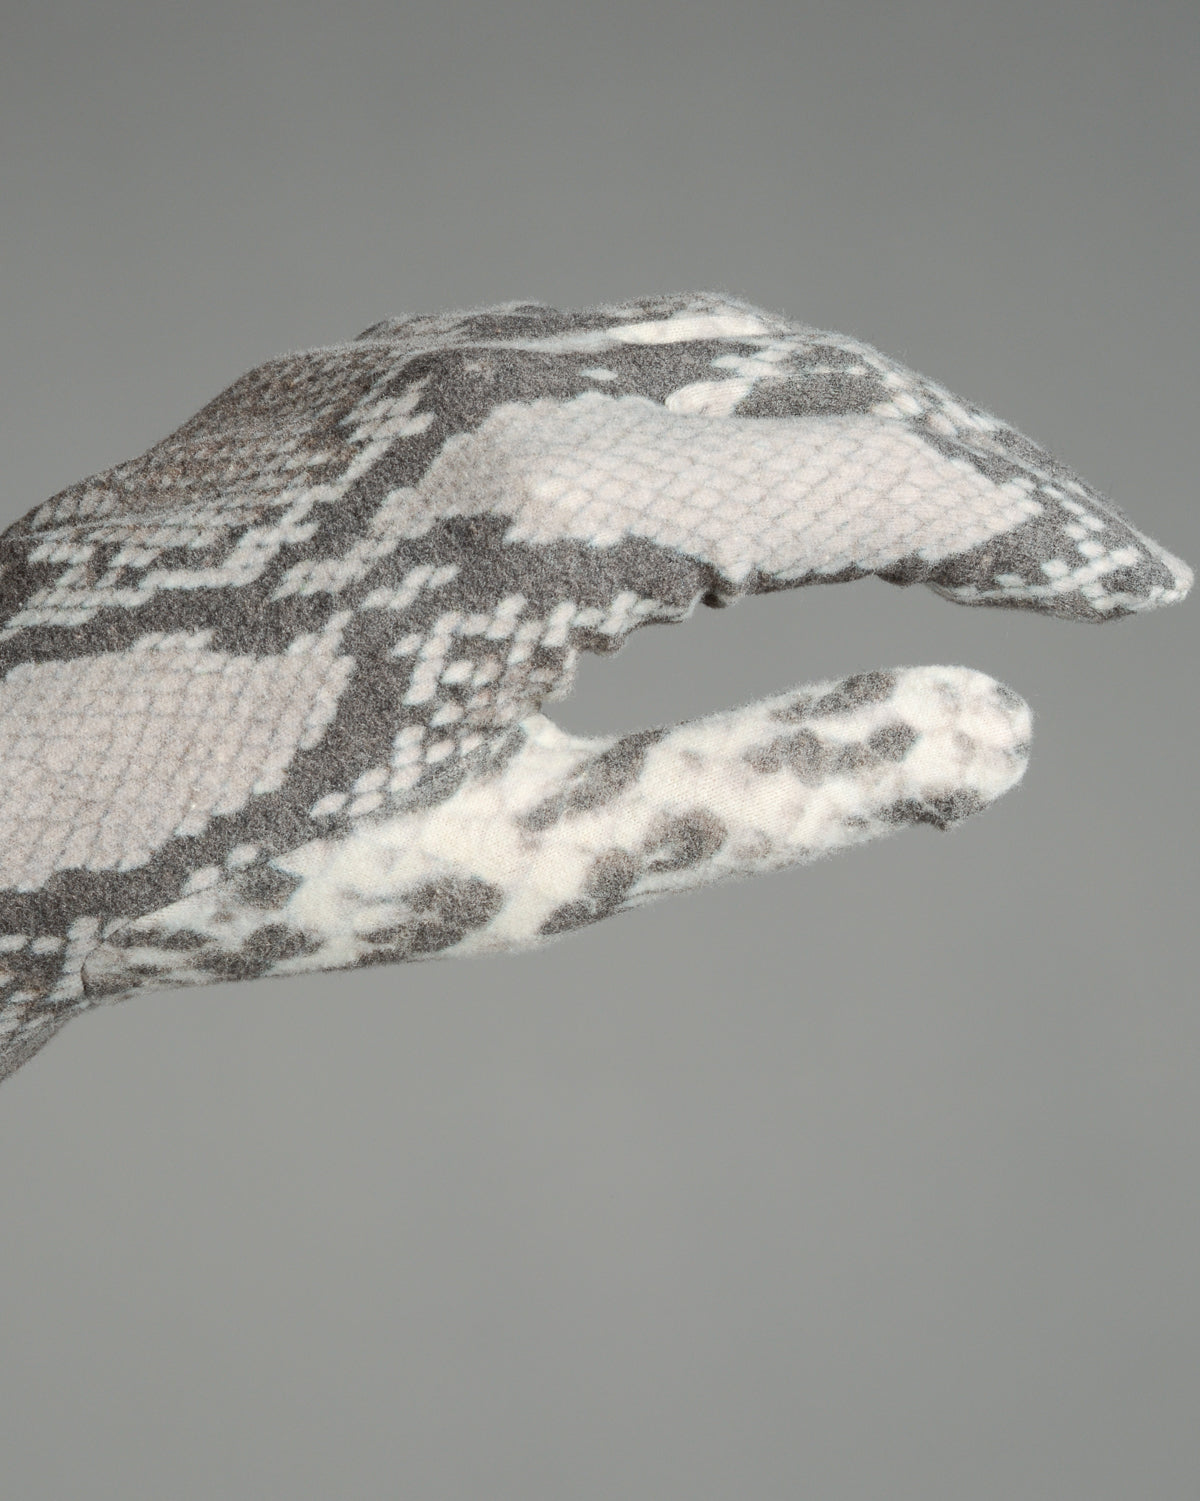 Snake Print Gloves